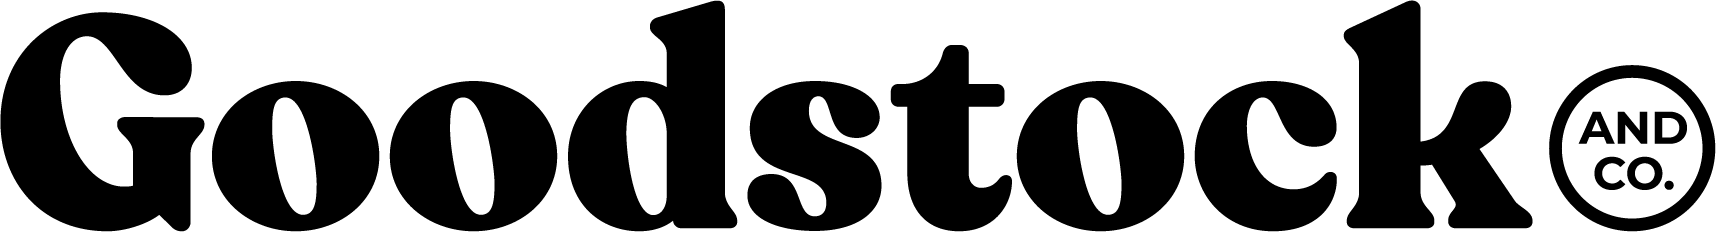 Goodstock Logo_Black_F